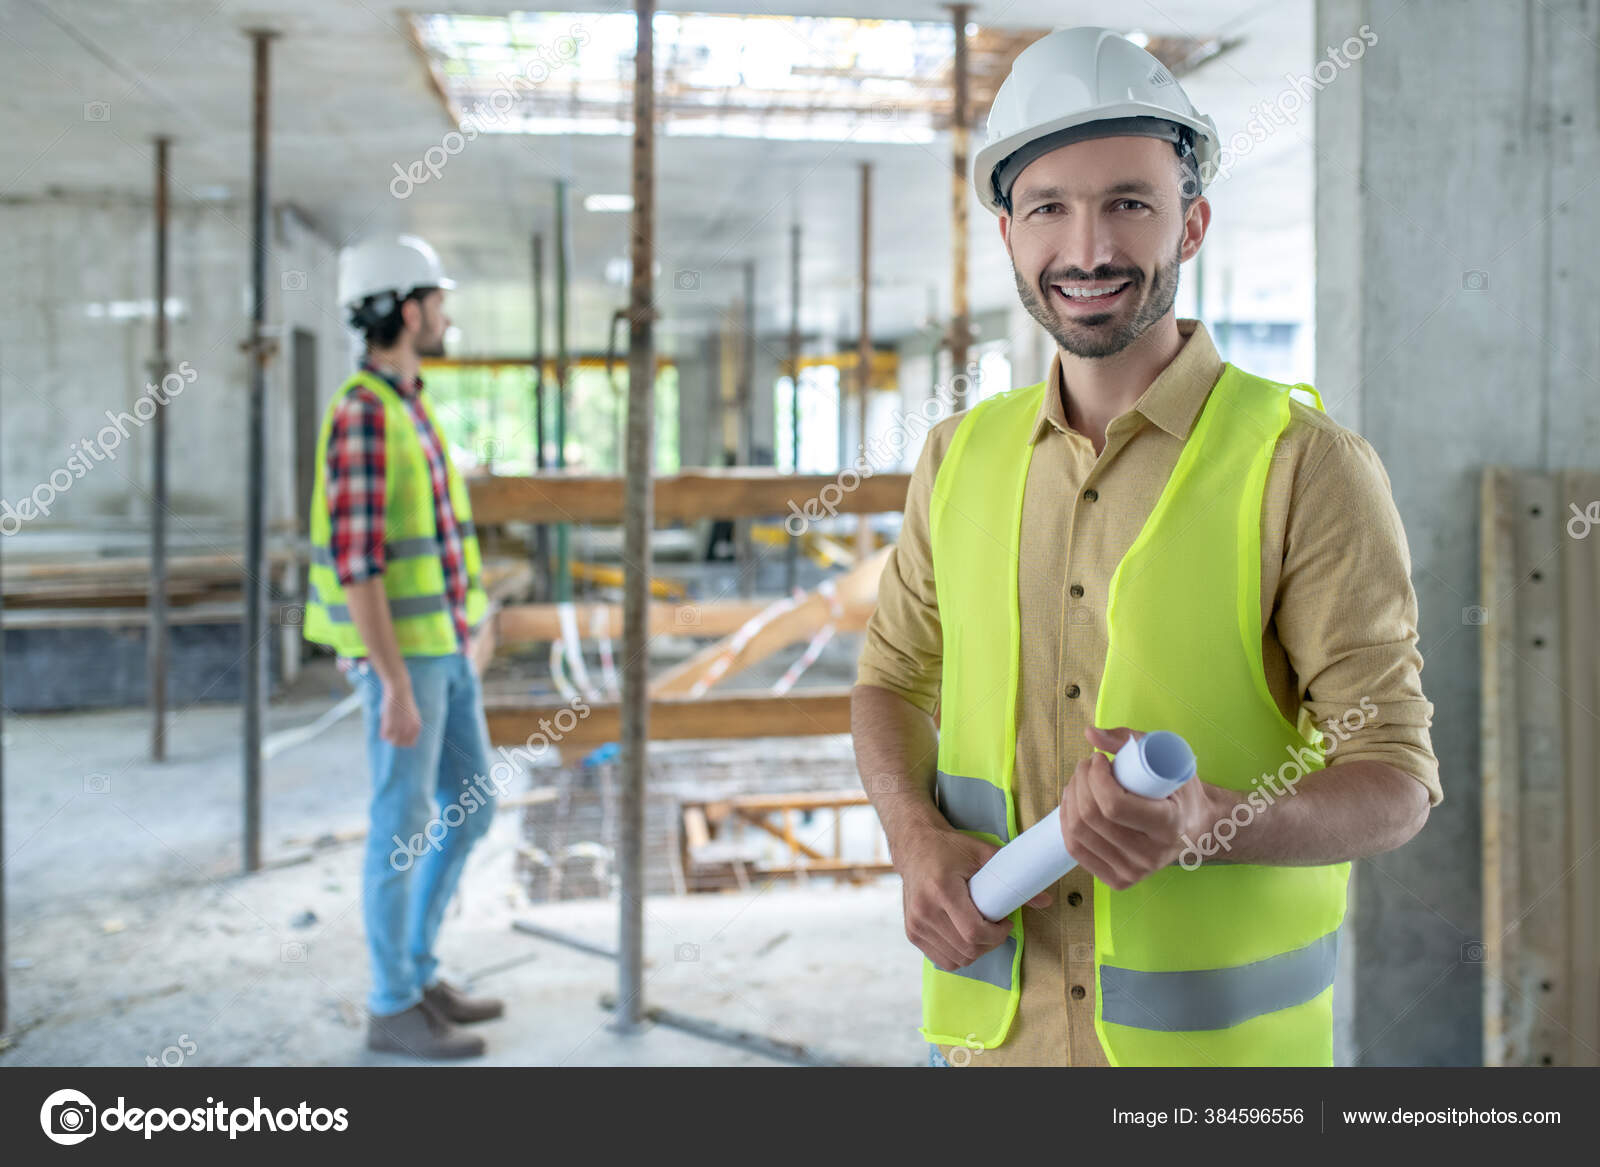 Bauarbeiter in gelber Weste mit Blaupause, lächelnd, sein Kollege